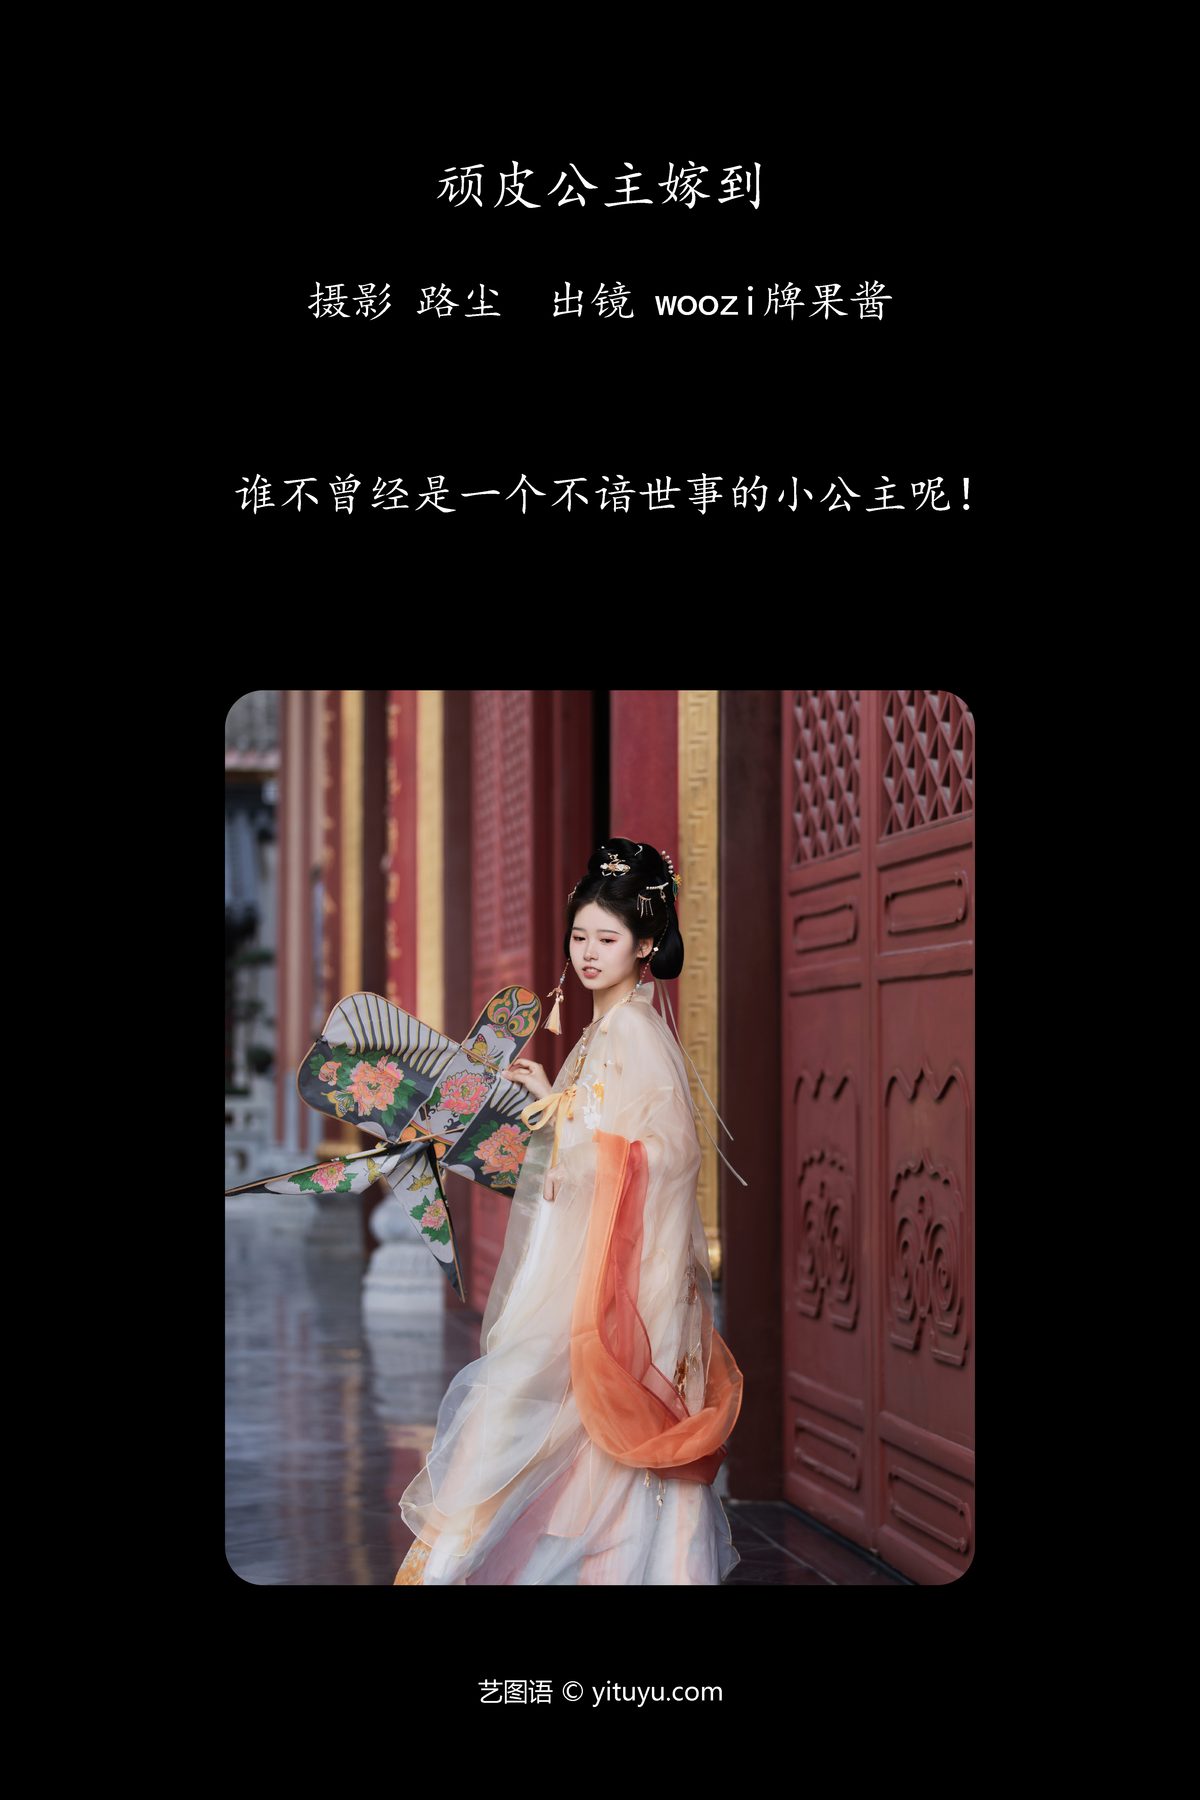 YiTuYu艺图语 Vol 6245 Woozi Pai Guo Jiang 0002 7625943476.jpg